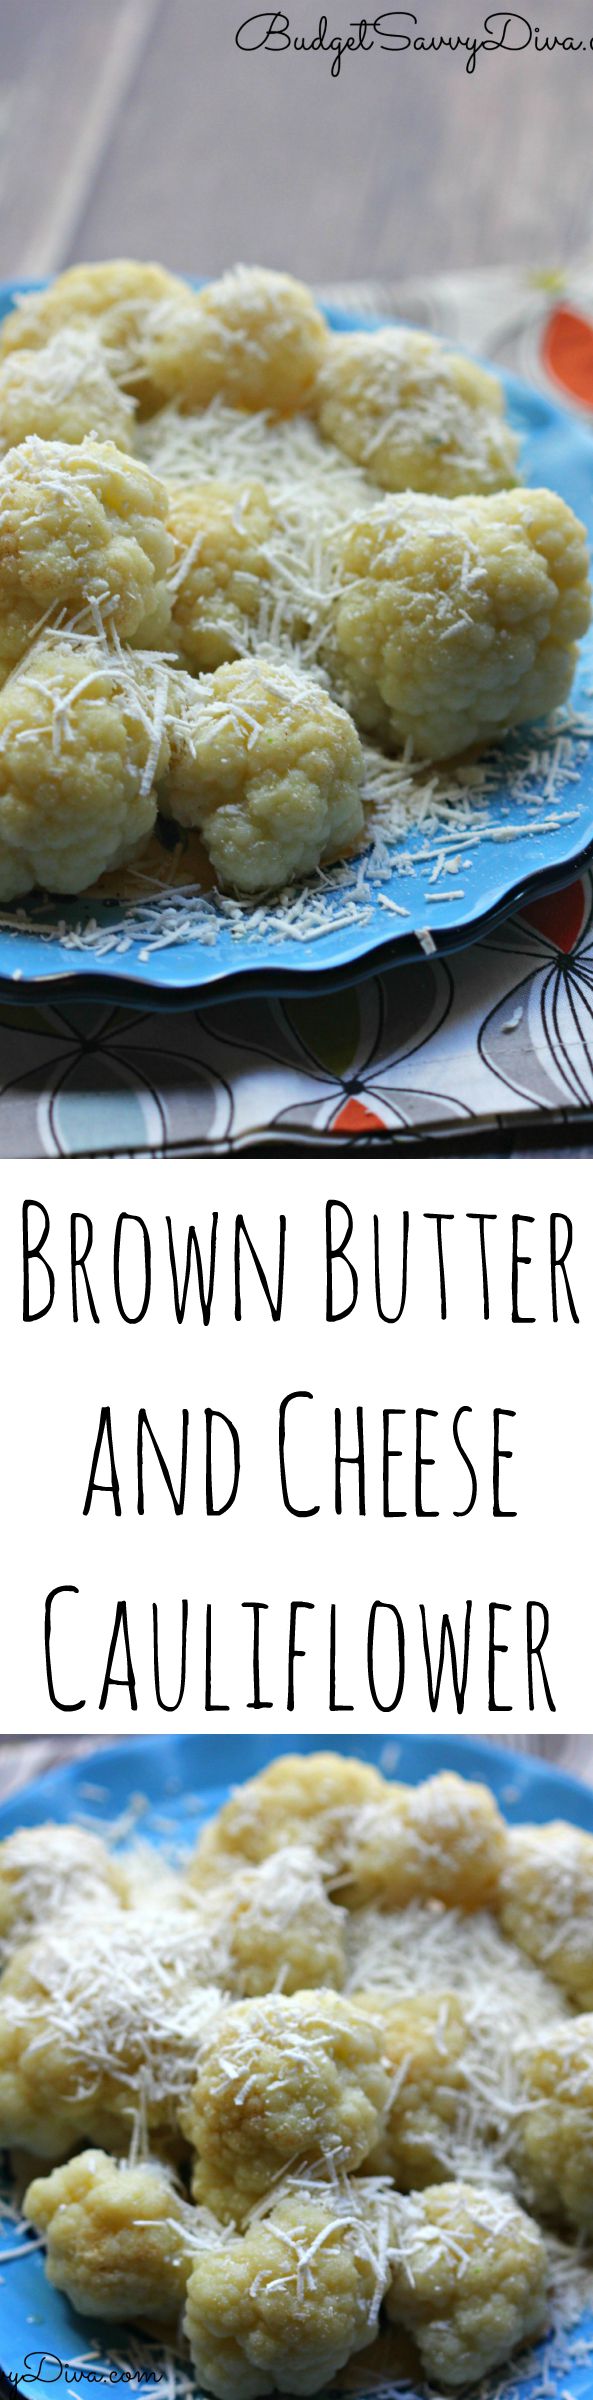 Brown Butter Cauliflower FINAL